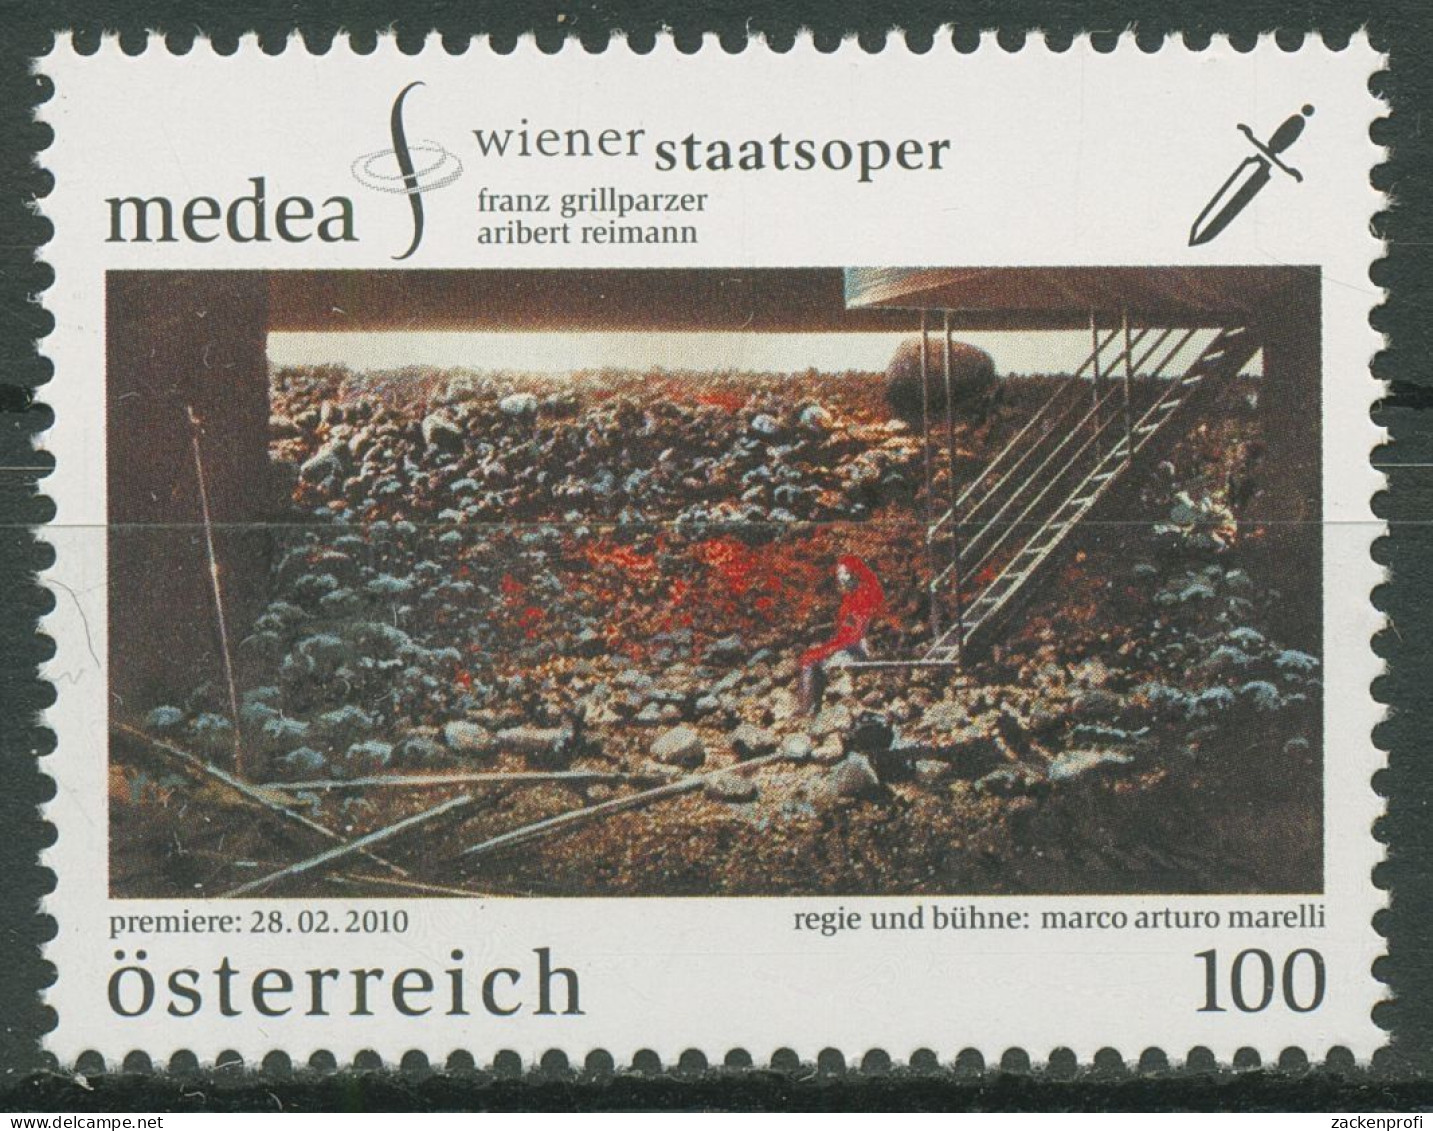 Österreich 2010 Wiener Staatsoper "Medea" 2857 Postfrisch - Ongebruikt